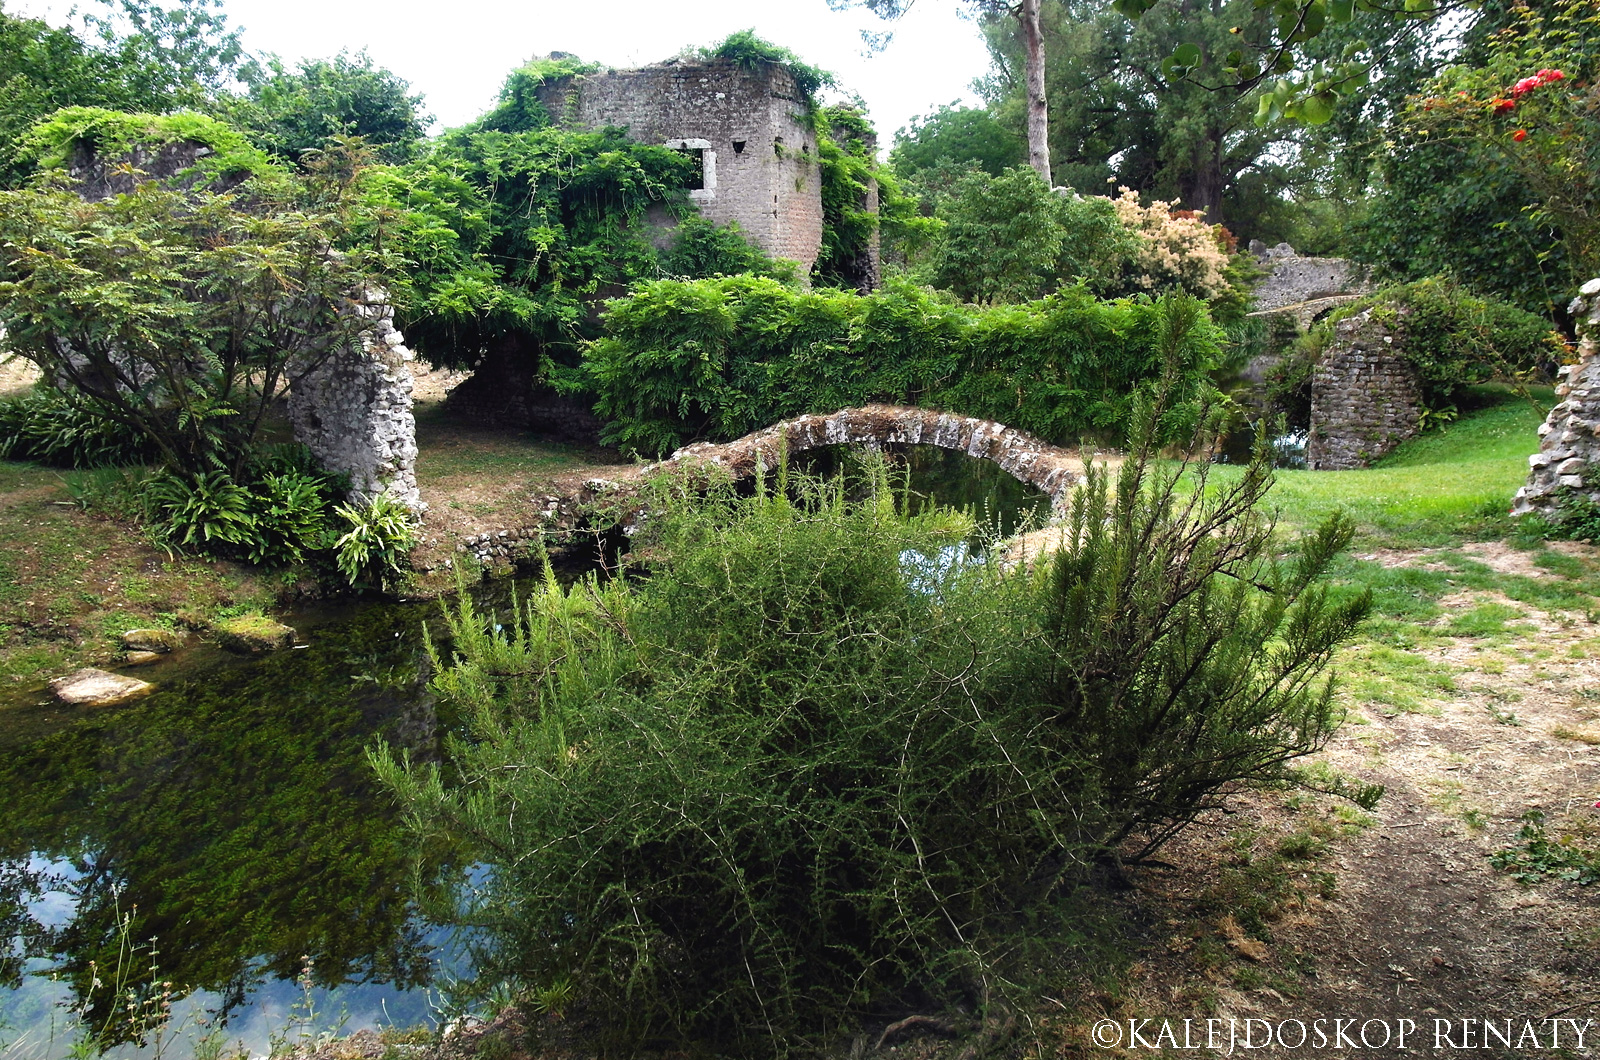 Ogród Nimfy — najbardziej magiczny ogród świata